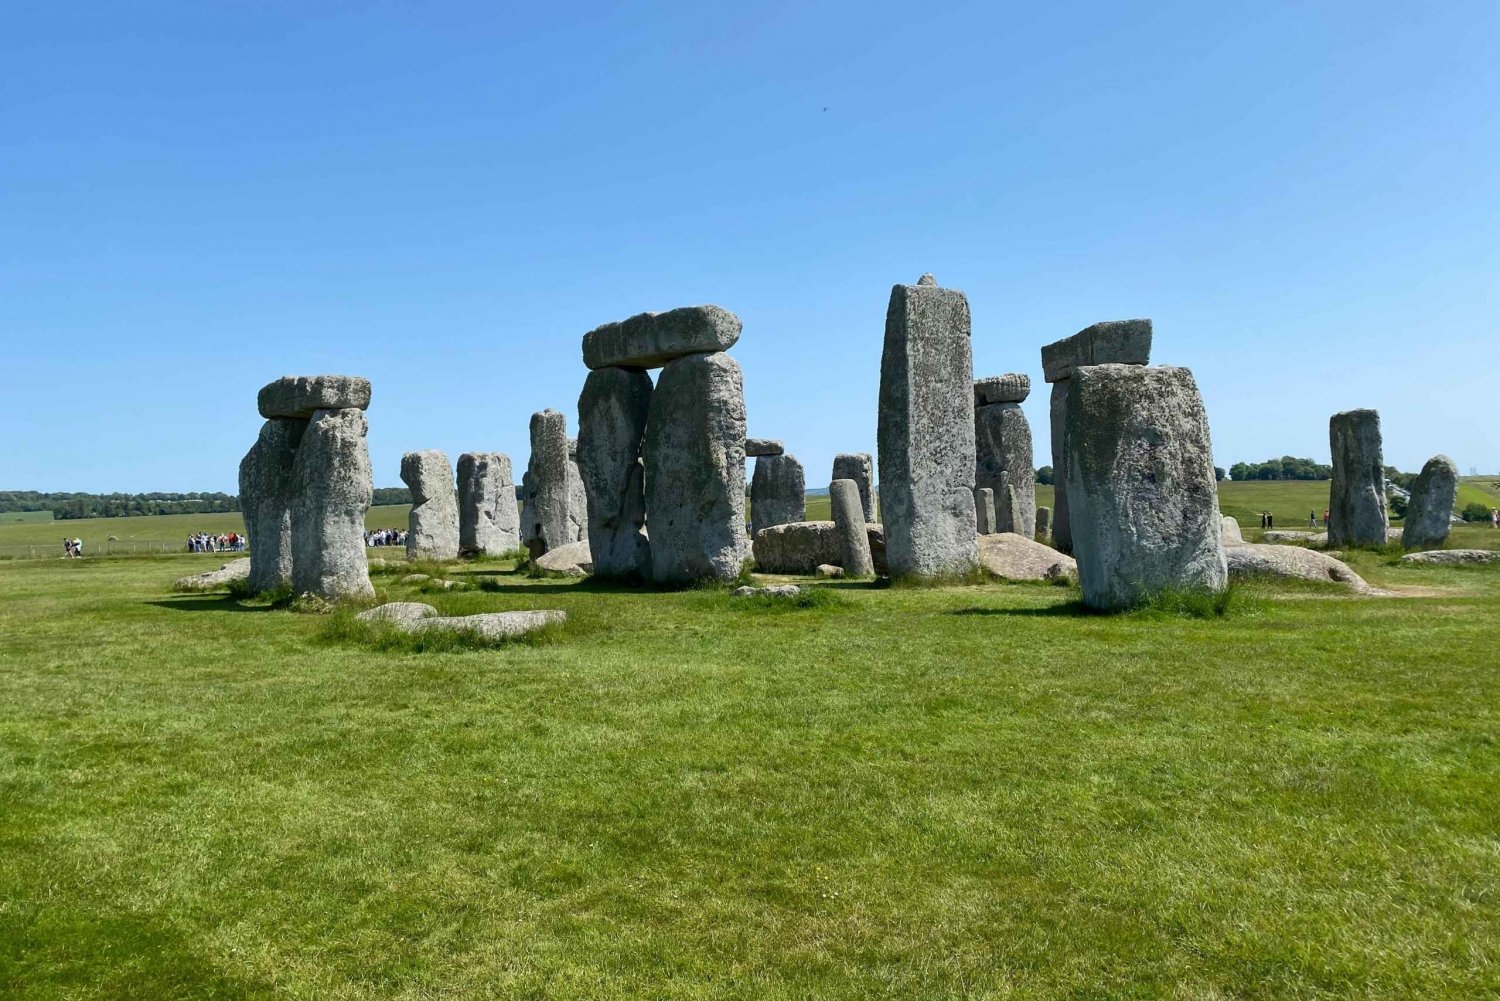 Viagem individual a Stonehenge, incluindo traslado de ida e volta